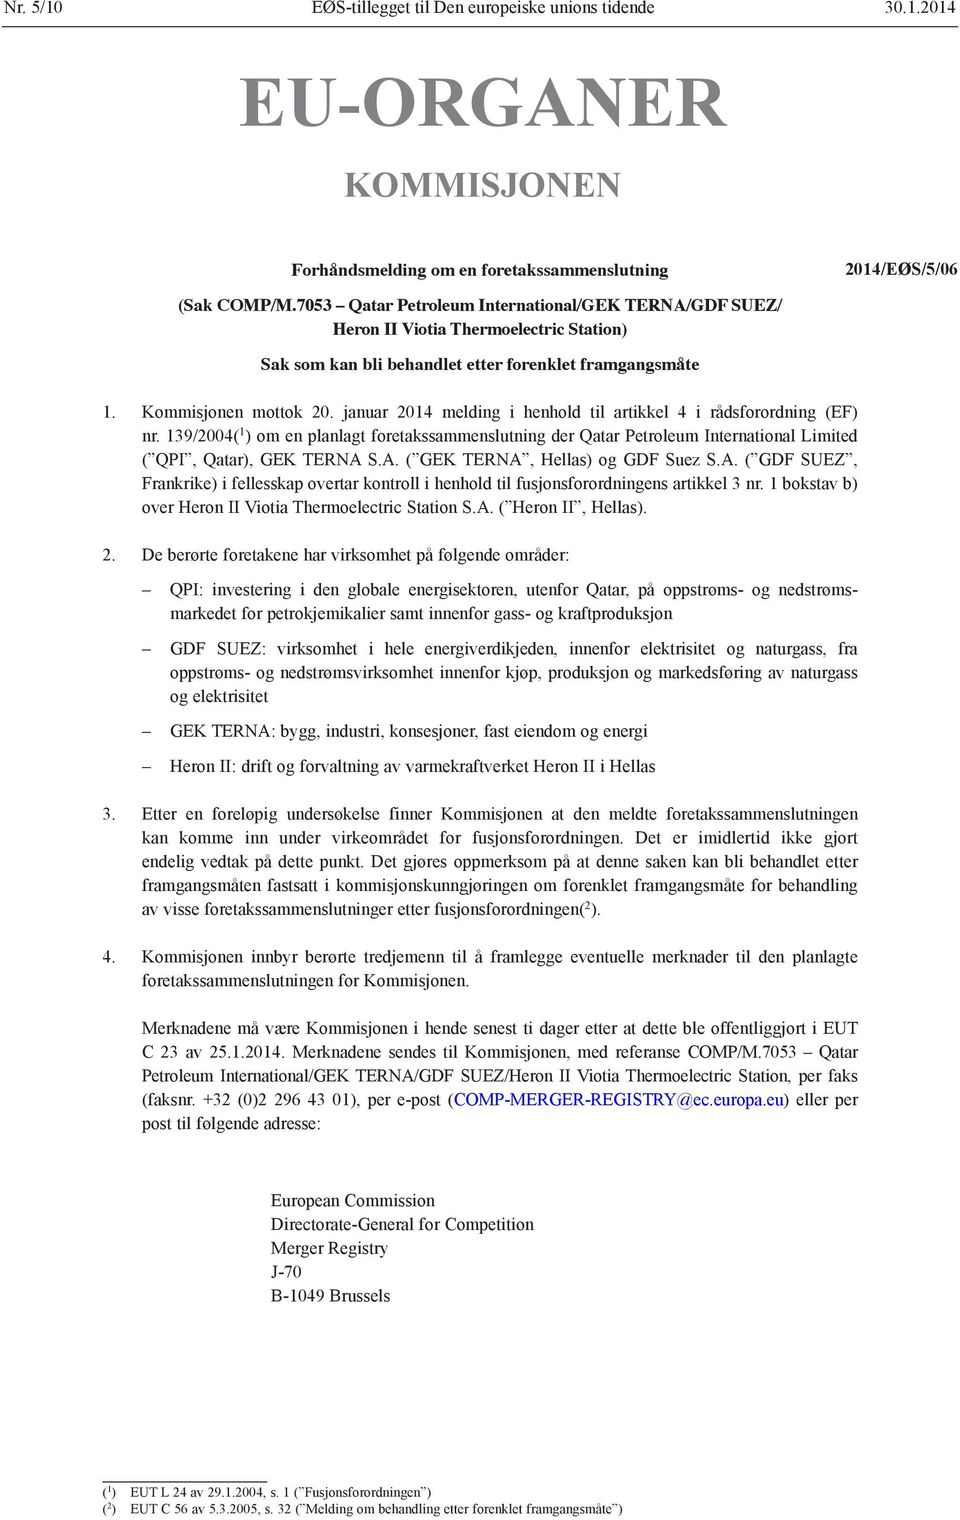 januar 2014 melding i henhold til artikkel 4 i rådsforordning (EF) nr. 139/2004( 1 ) om en planlagt foretakssammenslutning der Qatar Petroleum International Limited ( QPI, Qatar), GEK TERNA 